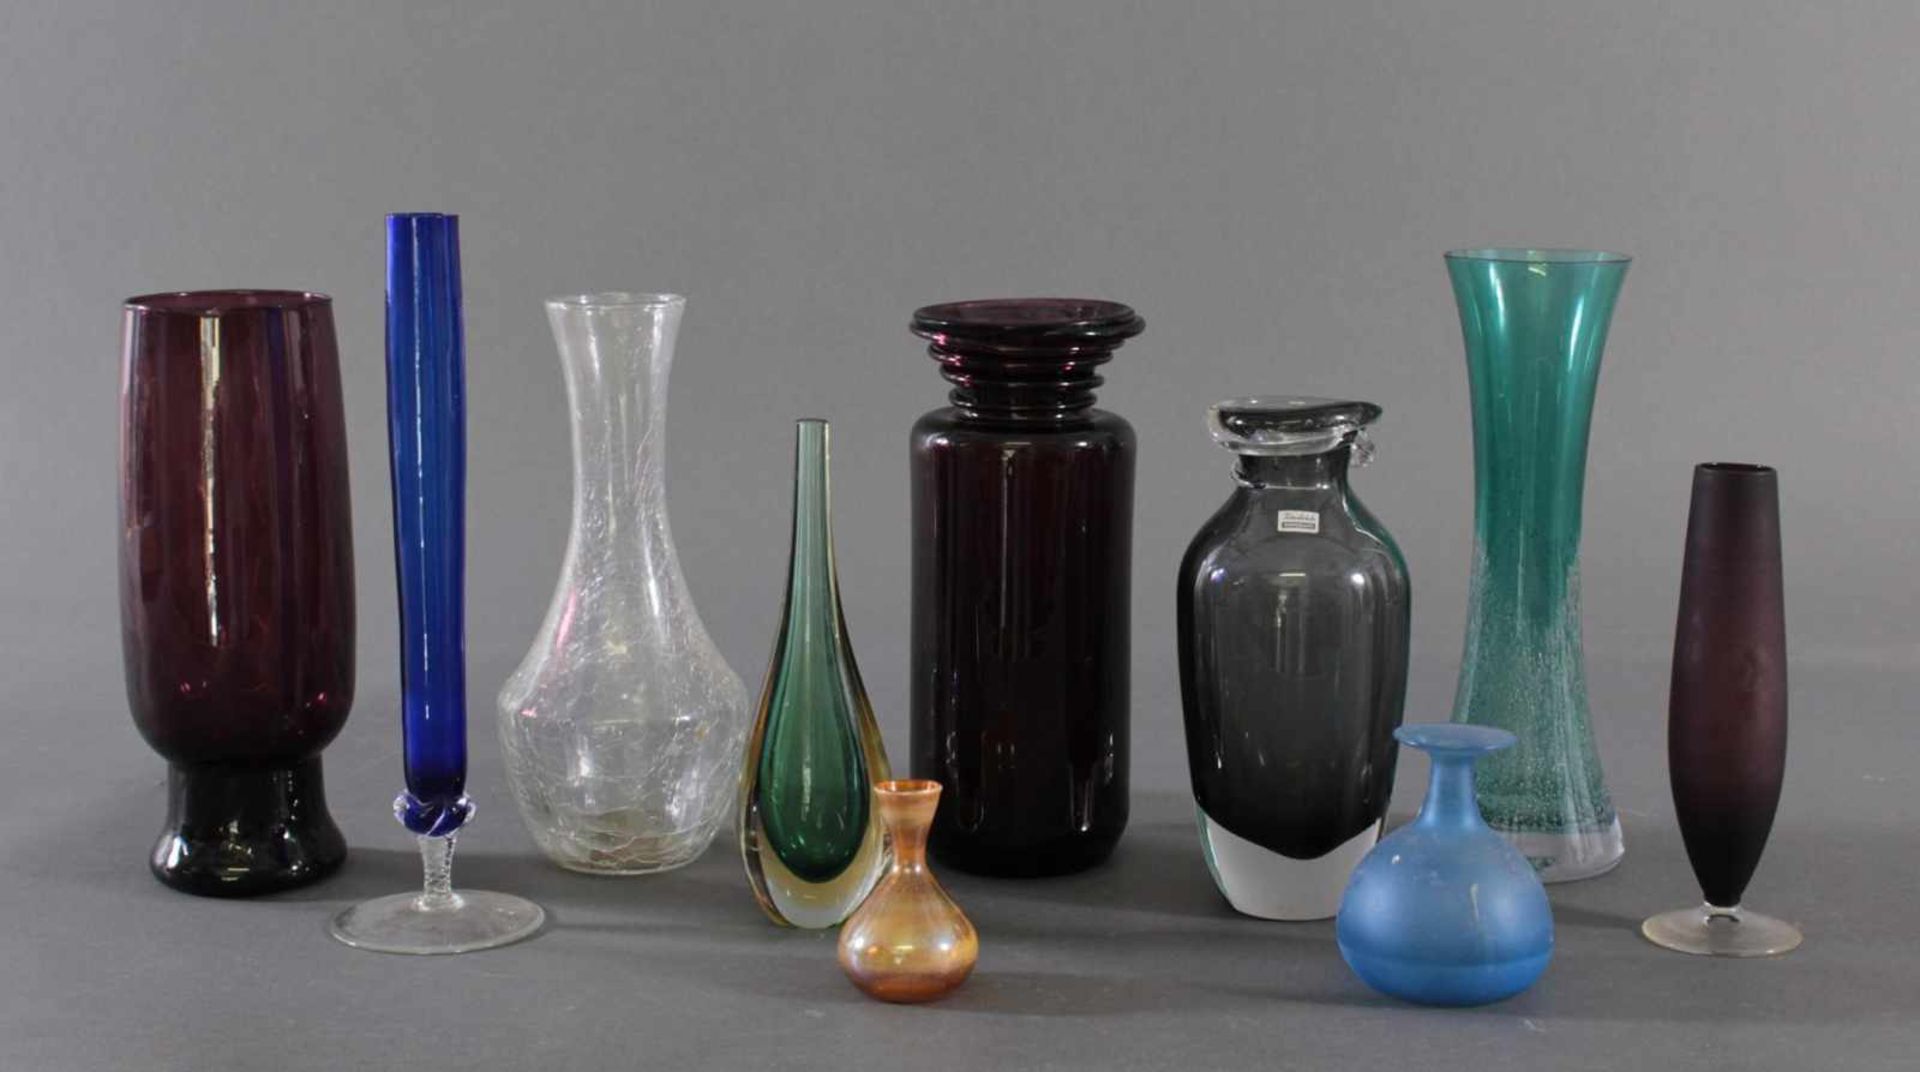 Konvolut von 10 VasenFarbloses Glas, unterschiedliche Formen und Größen, 1x mit spiralförmiger